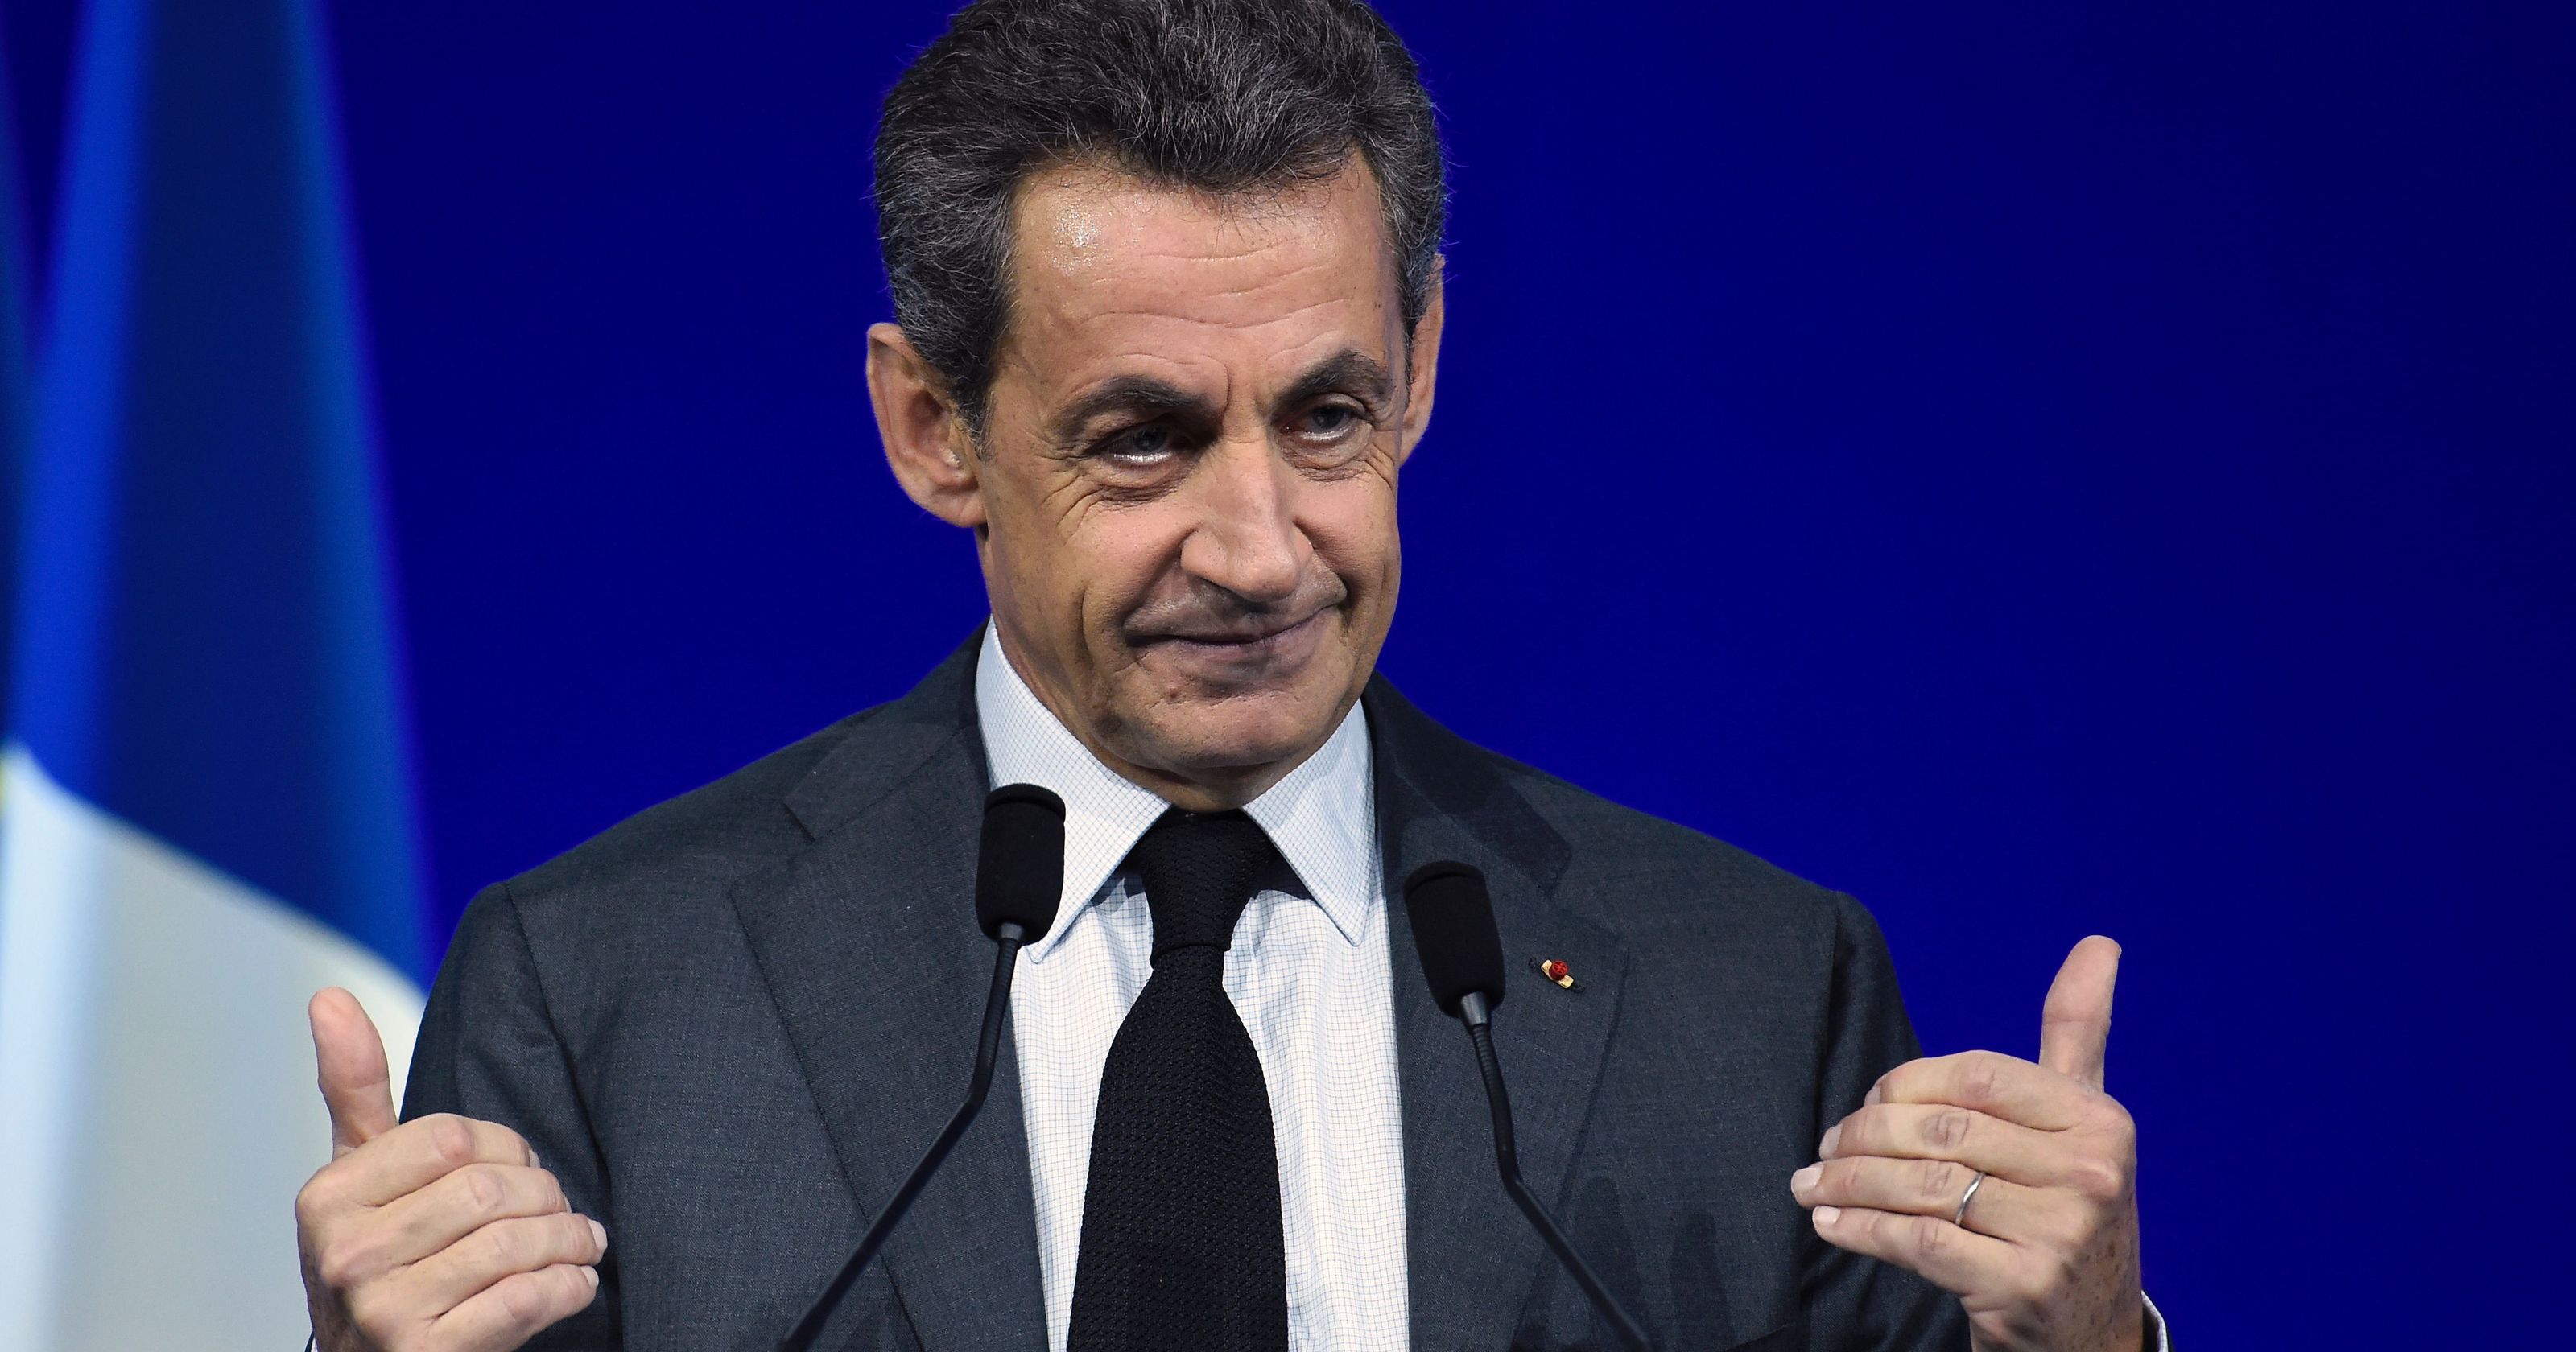 Nicolas Sarkozy: le jour où, une de mes ancienne ministre s’est retrouvée en slip devant lui